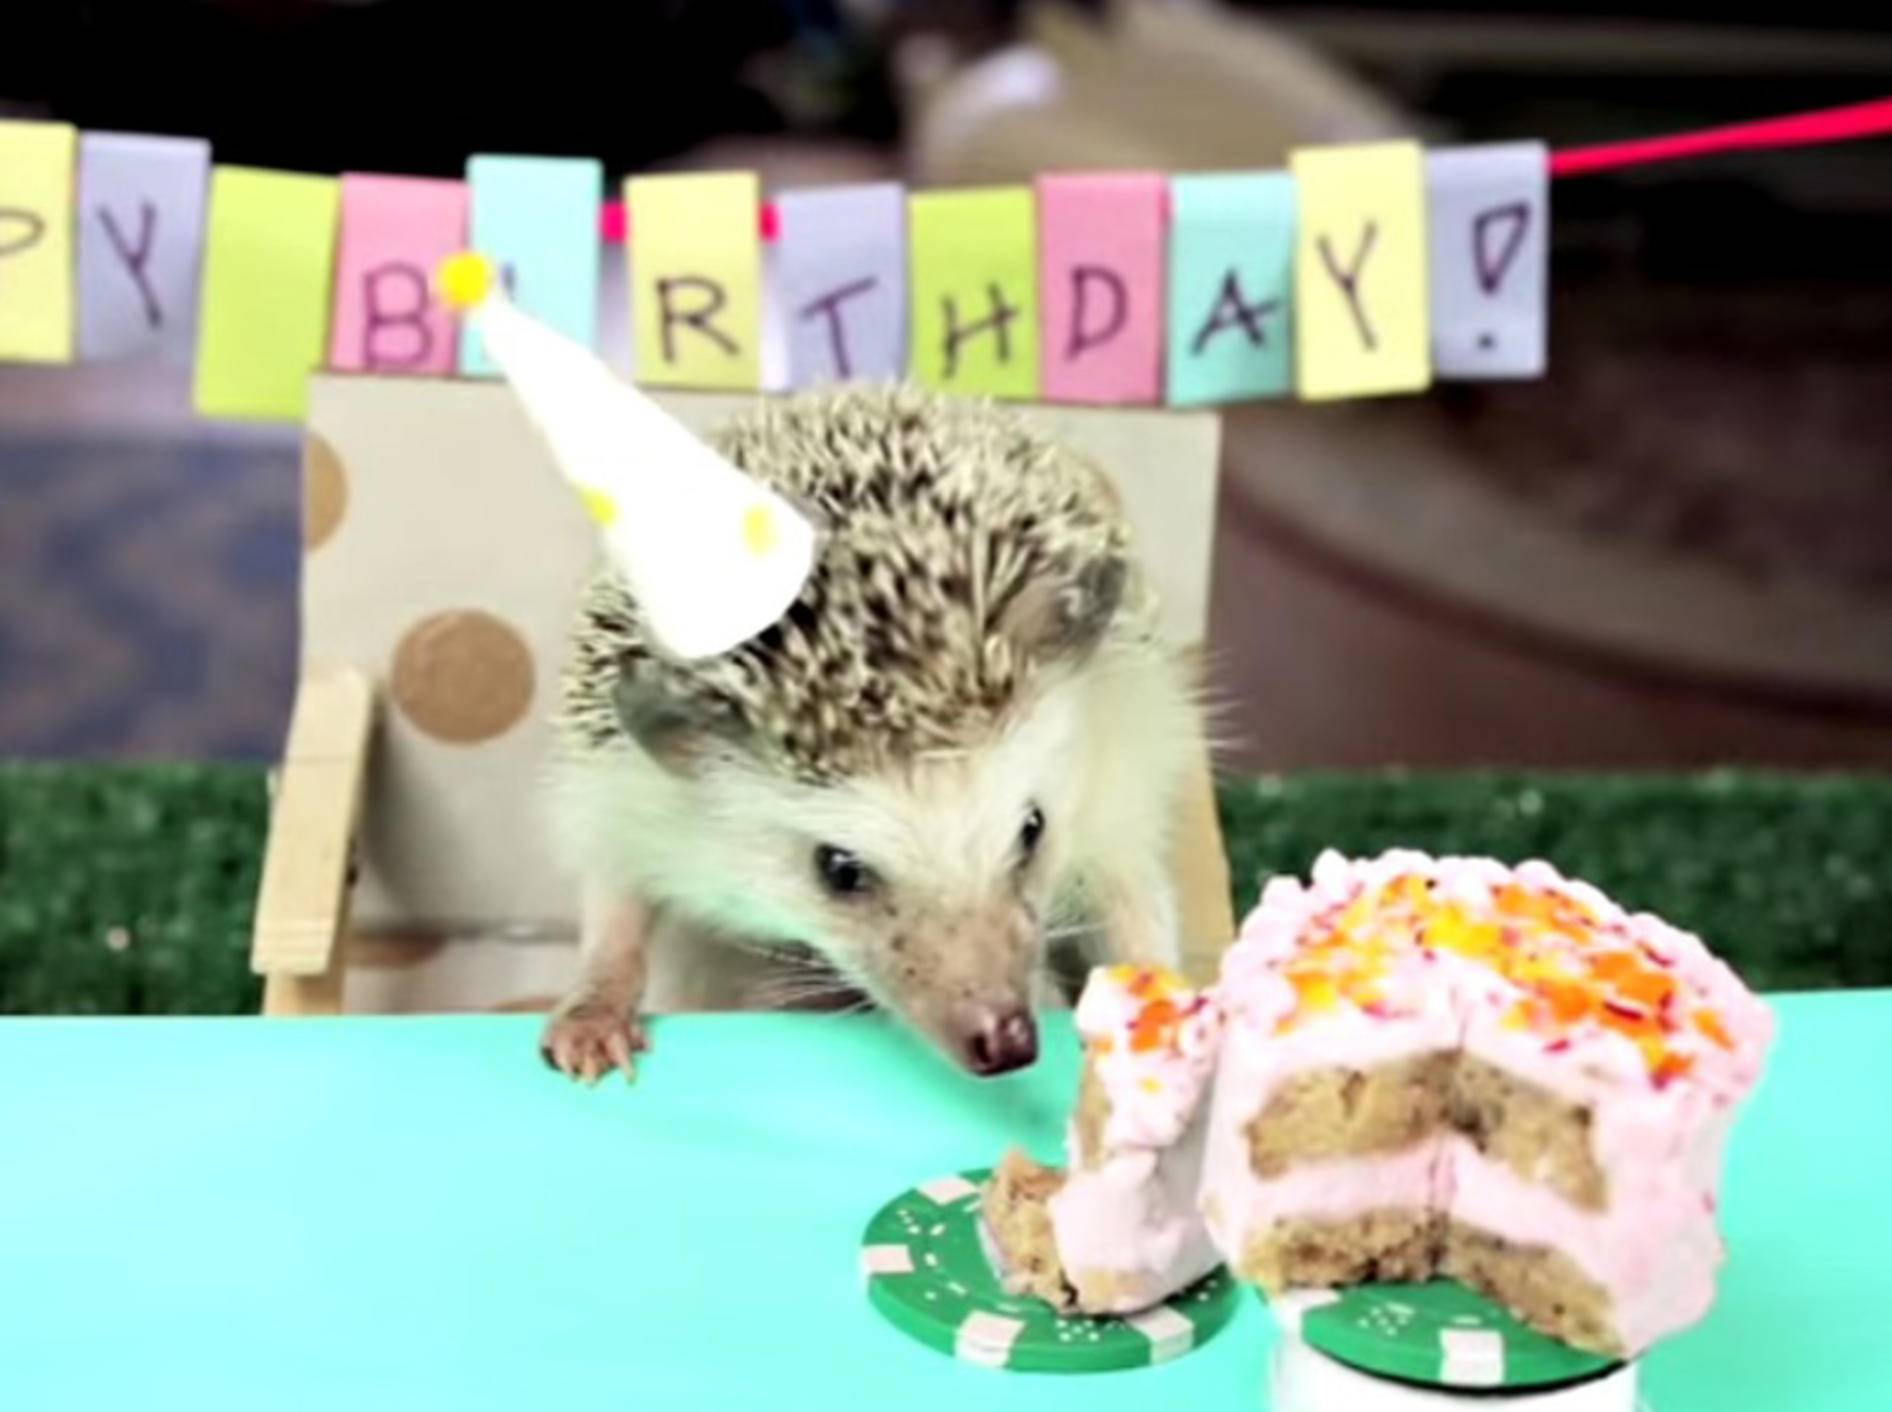 Ein kleiner Igel feiert Geburtstag – Bild: Youtube / HelloDenizen